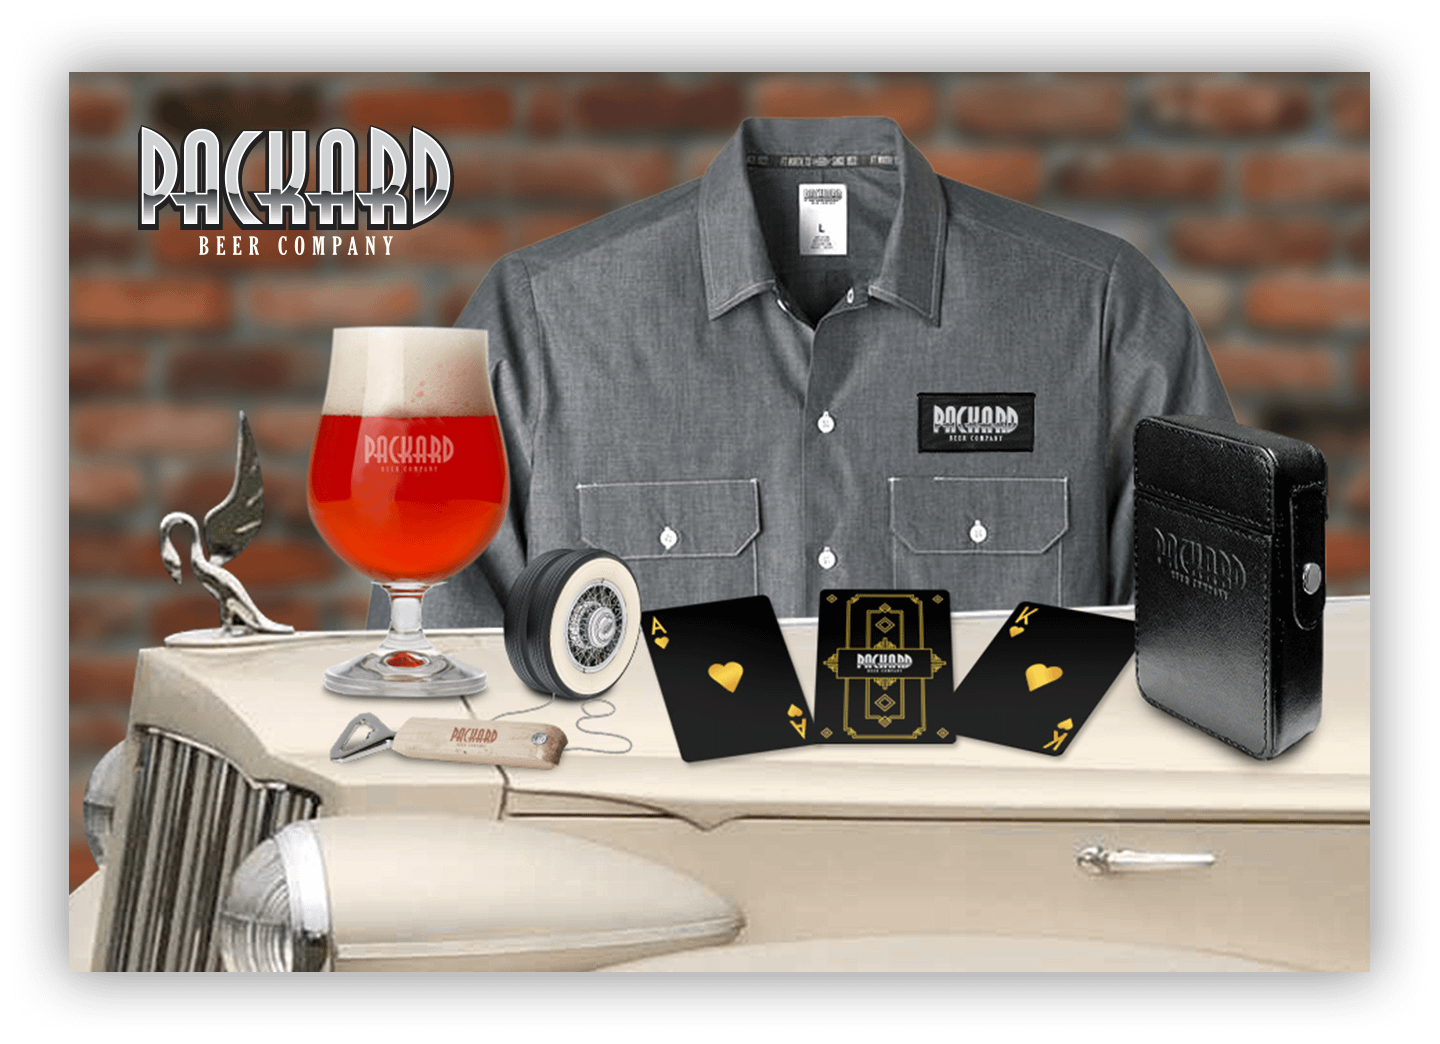 Packard Beer Company - merchandise - Merch